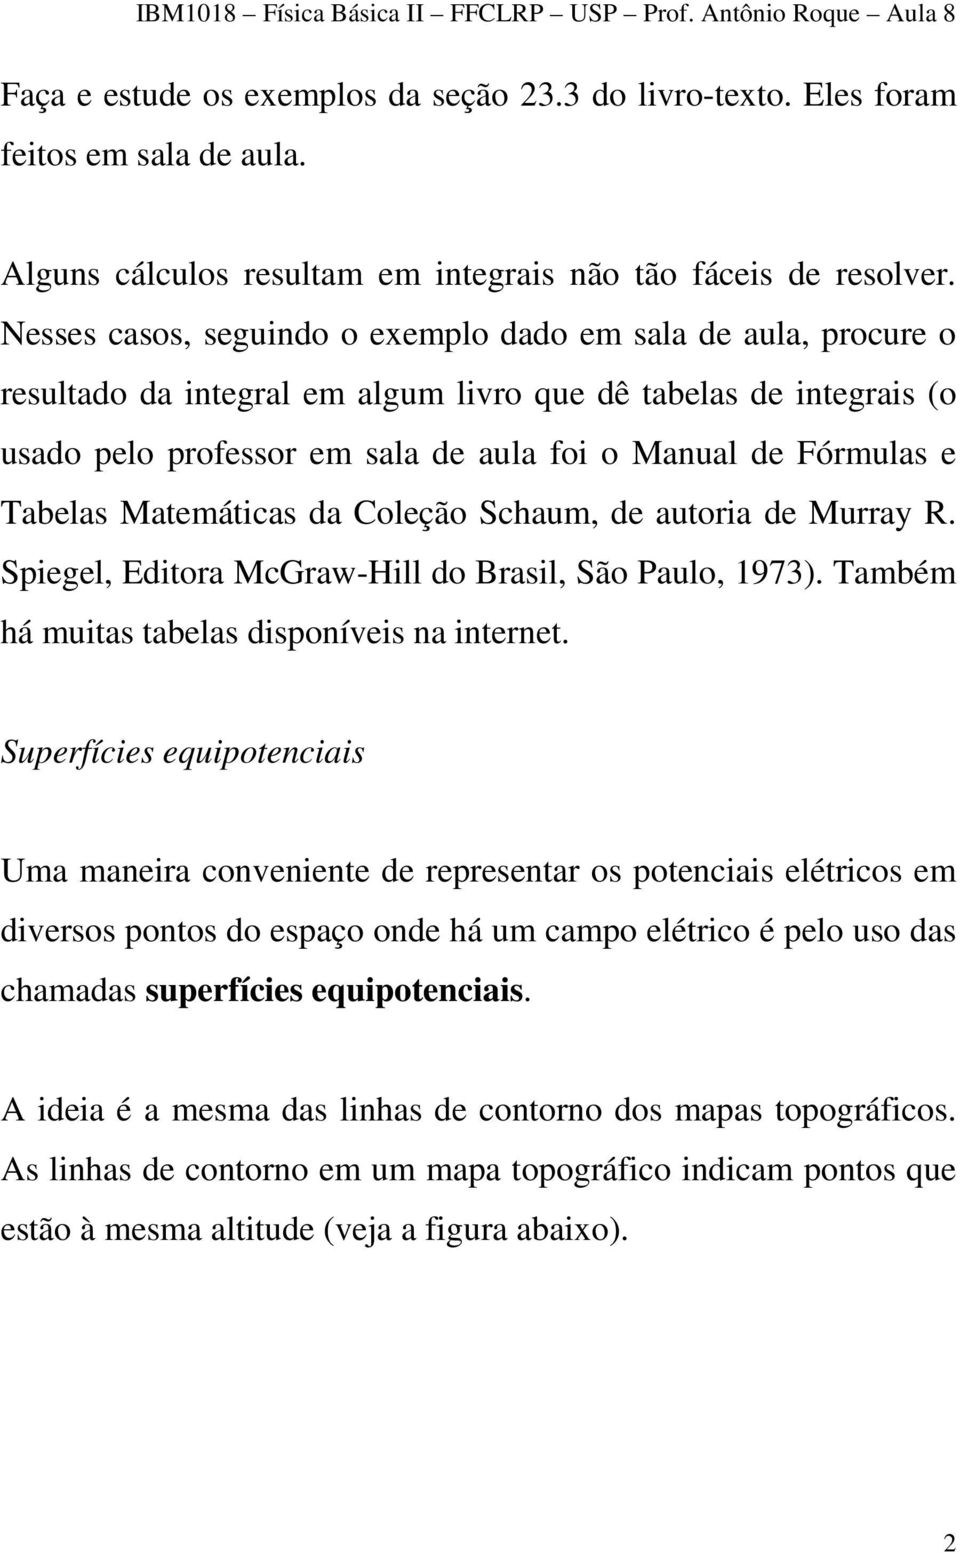 Tabelas Matemáticas da Coleção Schaum, de autoria de Murray R. Spiegel, Editora McGraw-Hill do Brasil, São Paulo, 1973). Também há muitas tabelas disponíveis na internet.